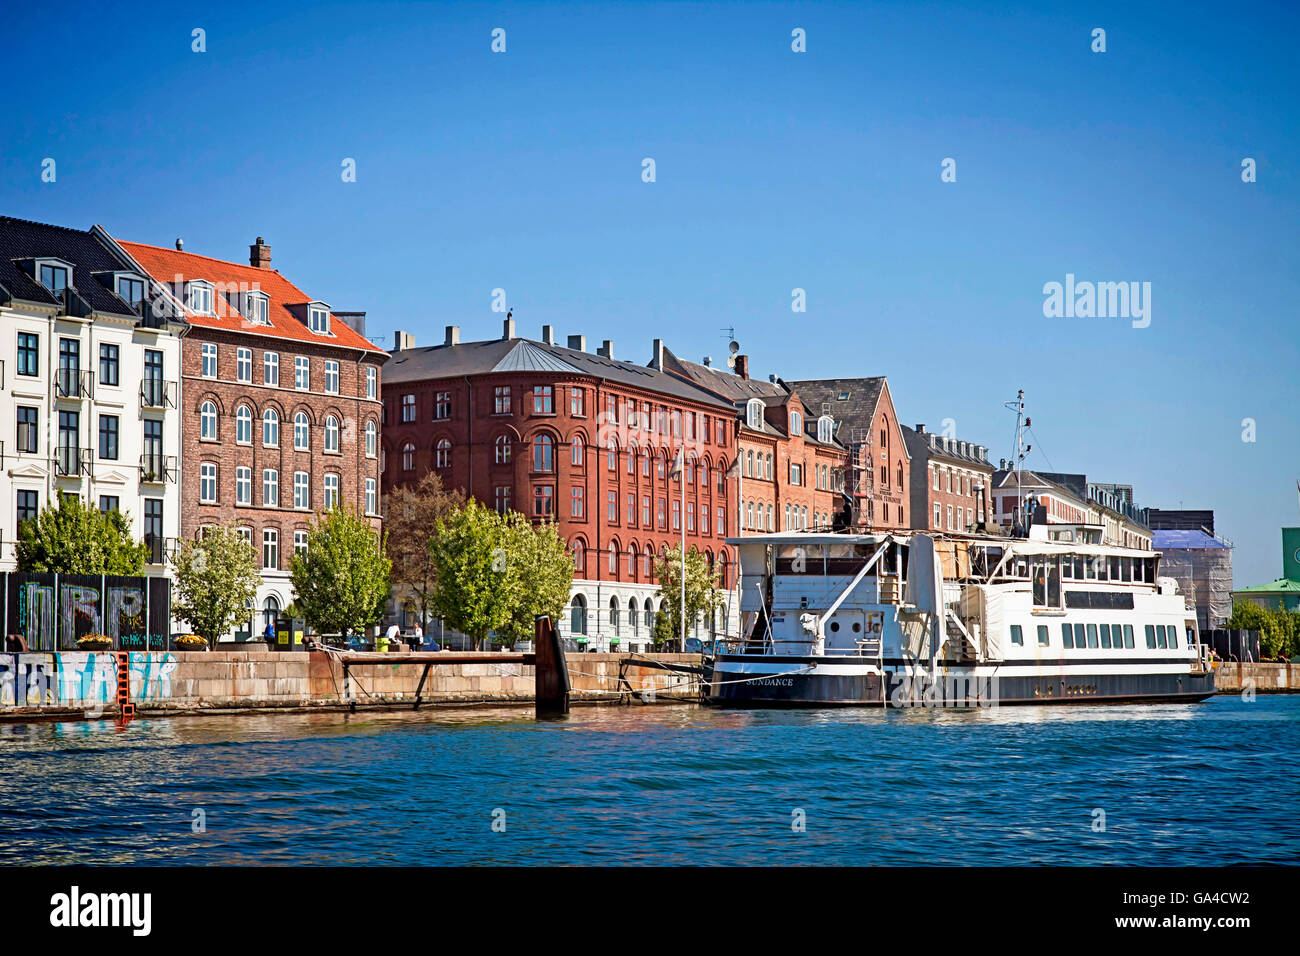 Copenhague, Danemark - Façades et bateau amarré à l'eau Havnegade promenade le long du port de Copenhague Banque D'Images